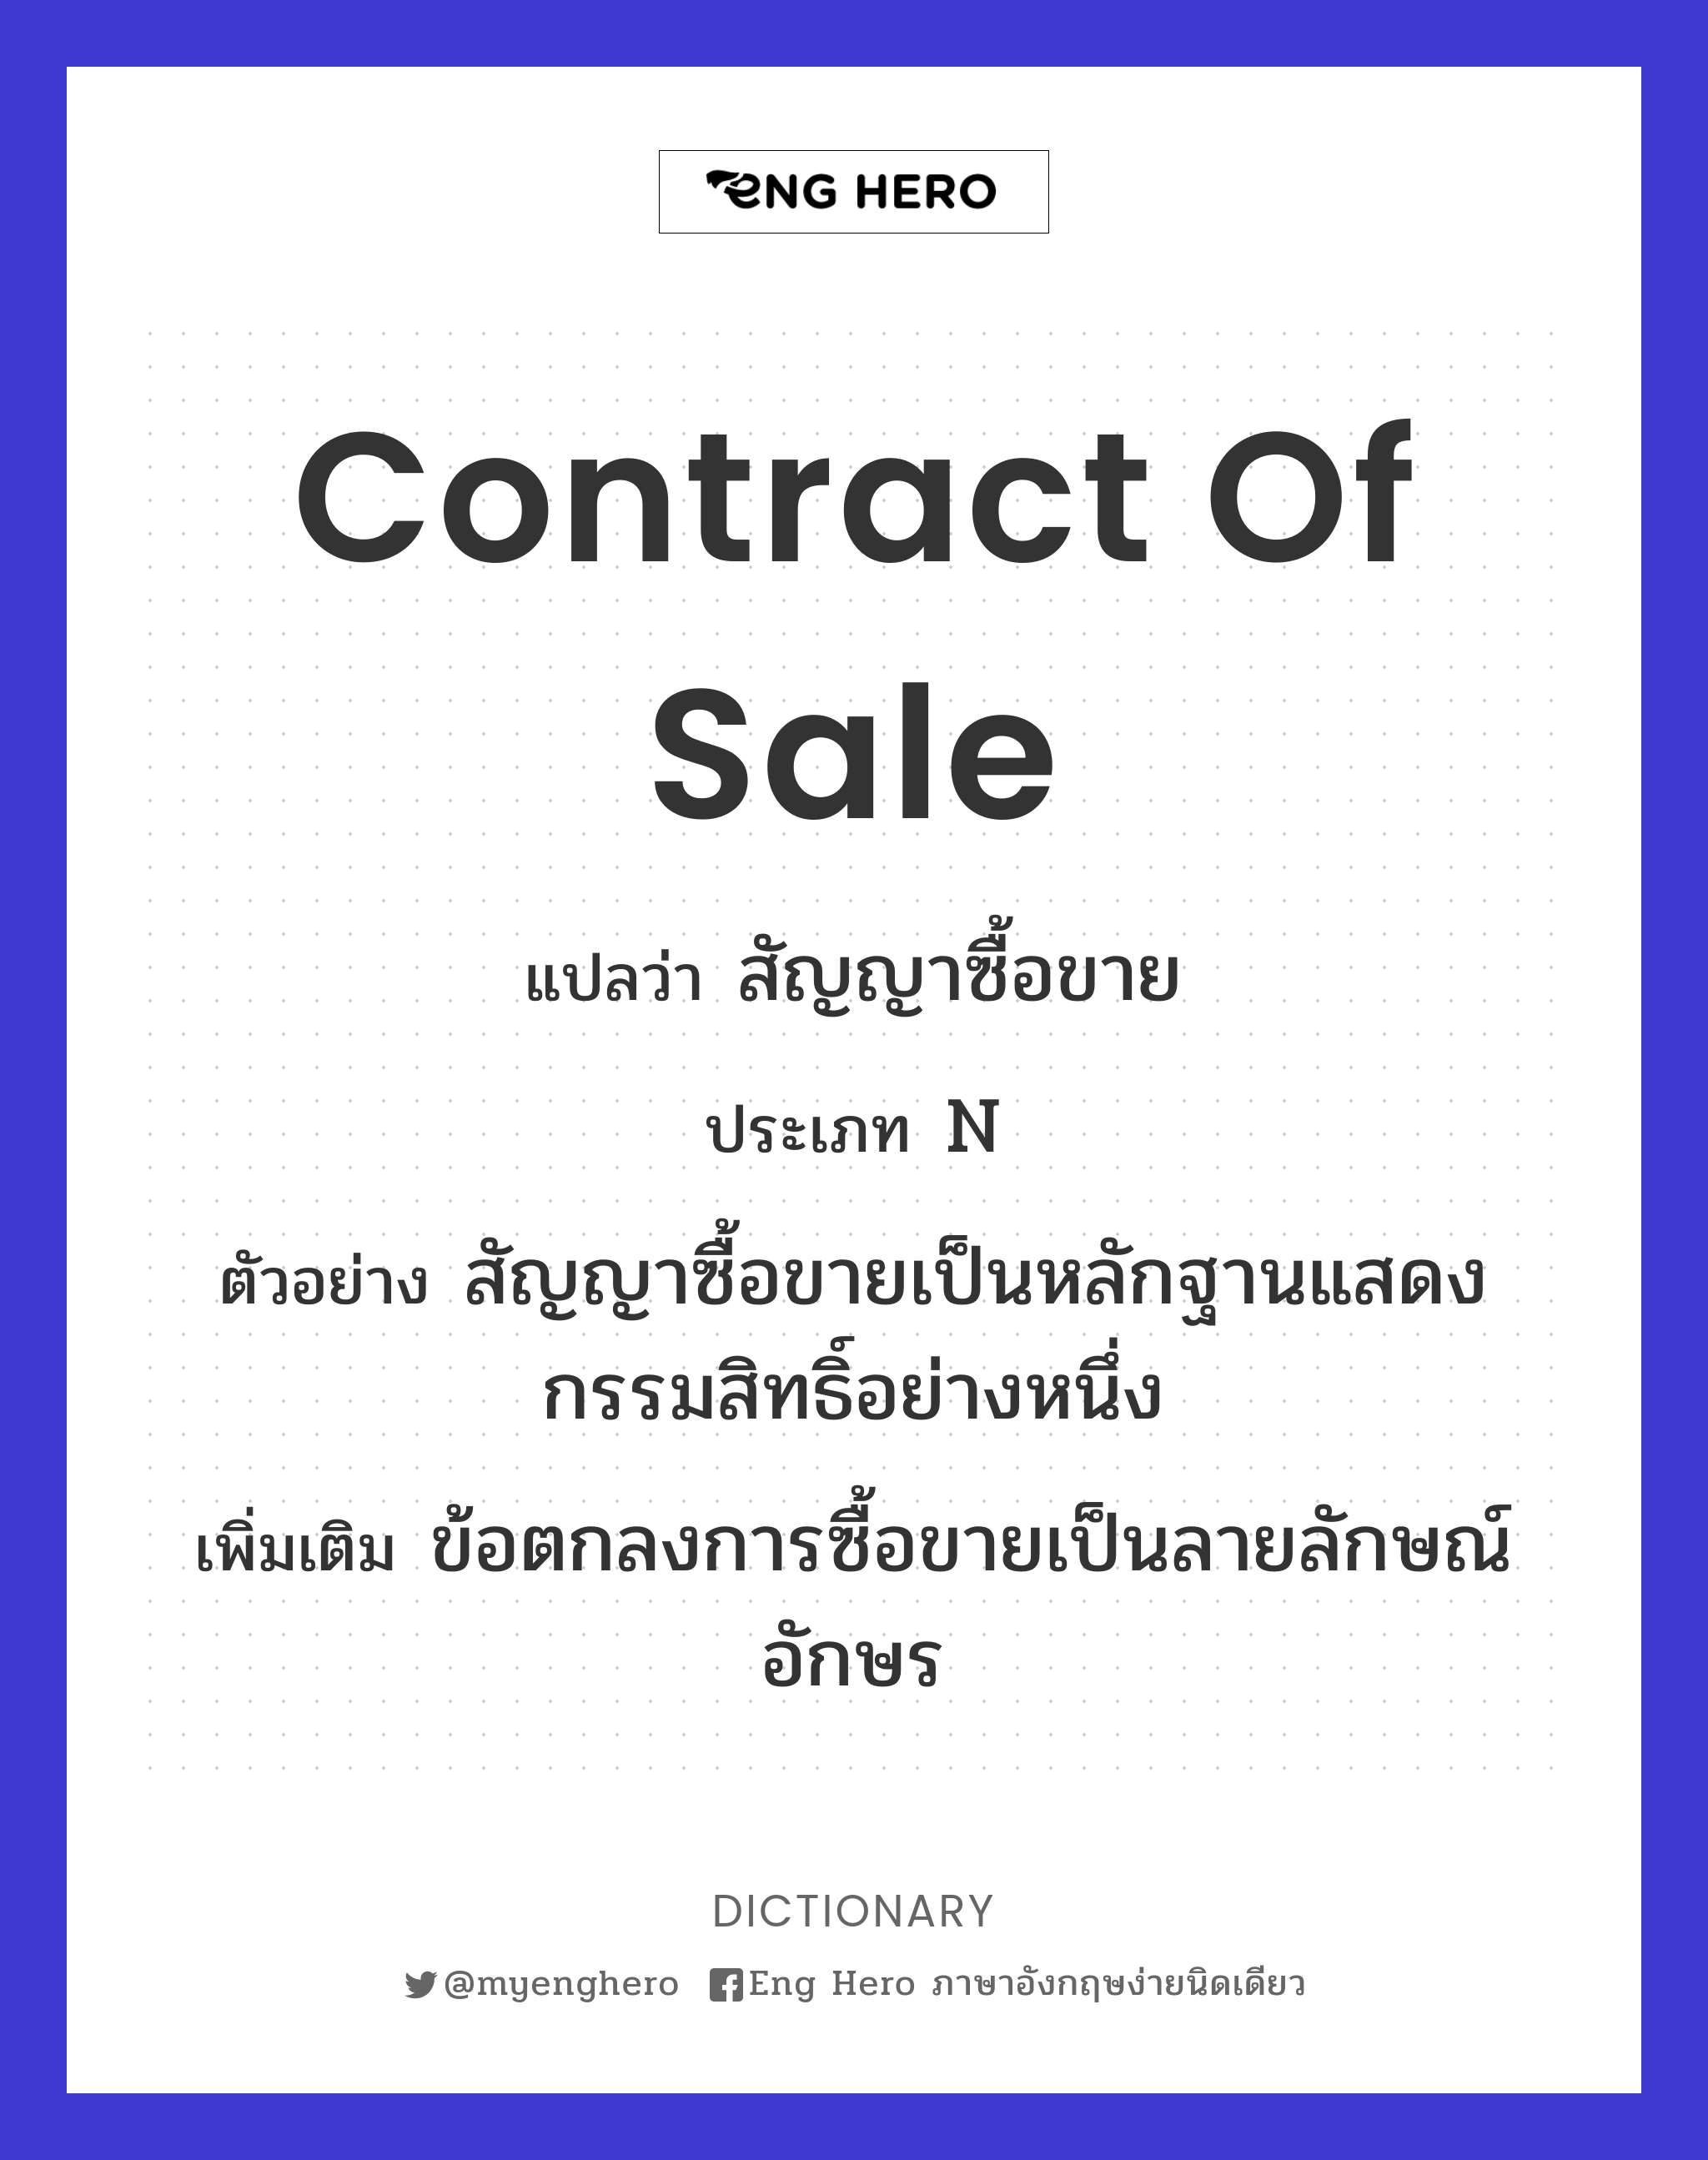 Contract Of Sale แปลว่า สัญญาซื้อขาย | Eng Hero เรียนภาษาอังกฤษ ออนไลน์ ฟรี